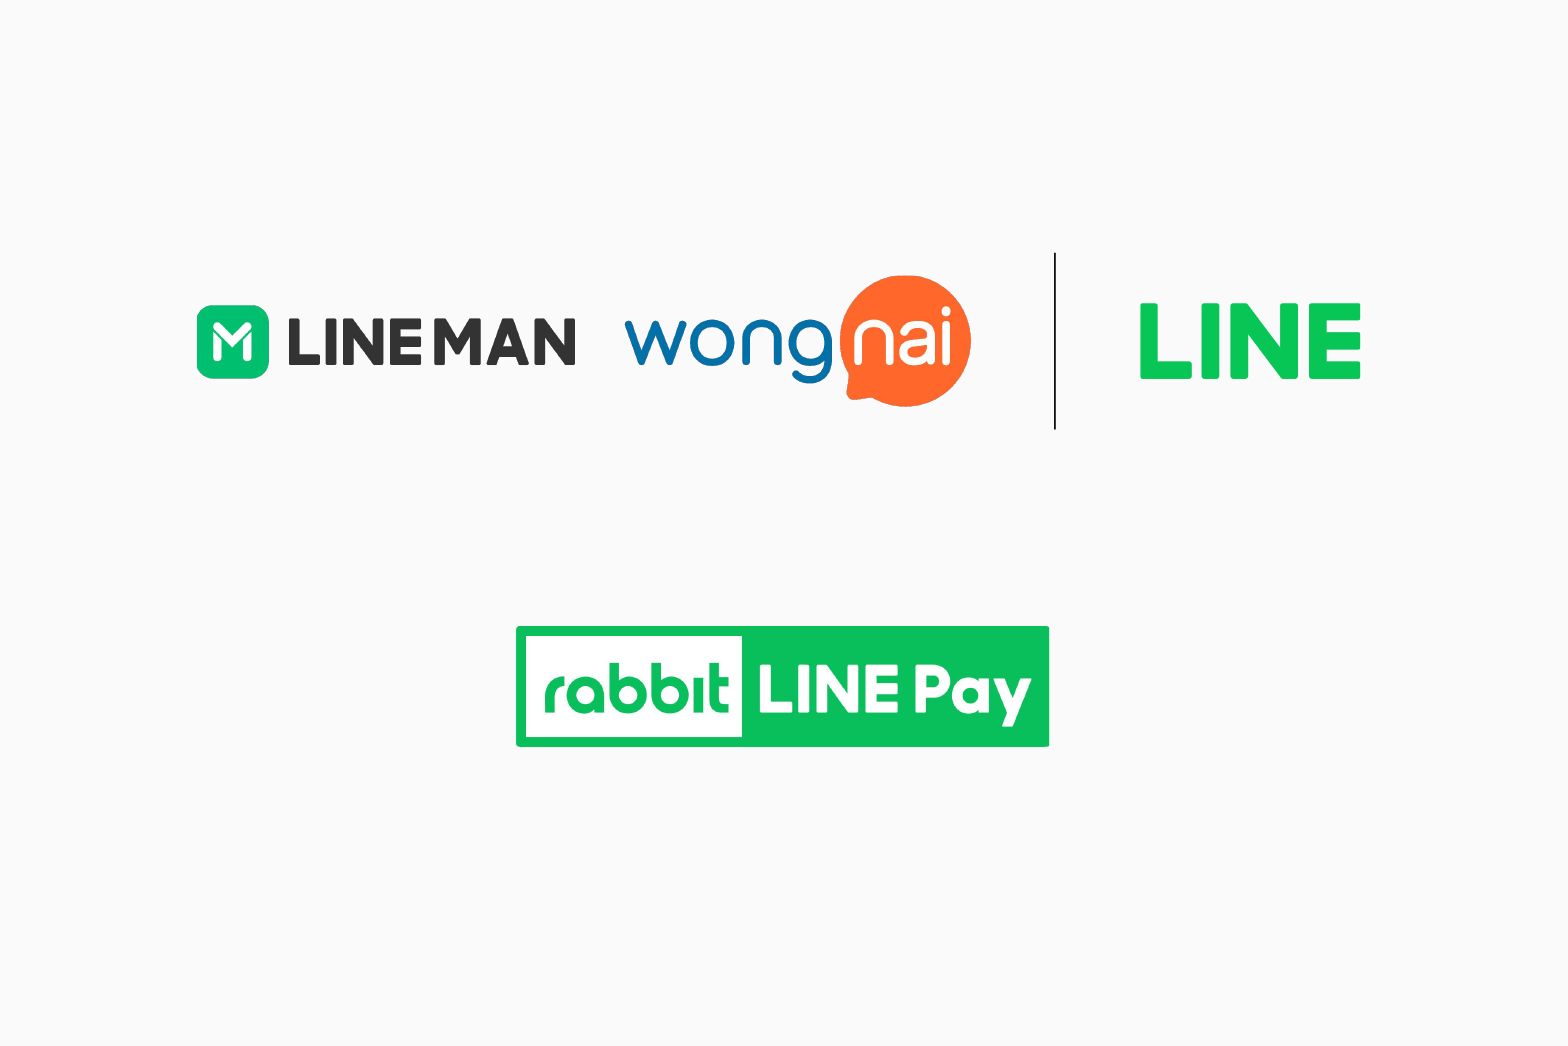 LINE MAN Wongnai และ LINE ประเทศไทย ซื้อหุ้นทั้งหมดของ Rabbit LINE Pay จากผู้ถือหุ้นเดิม